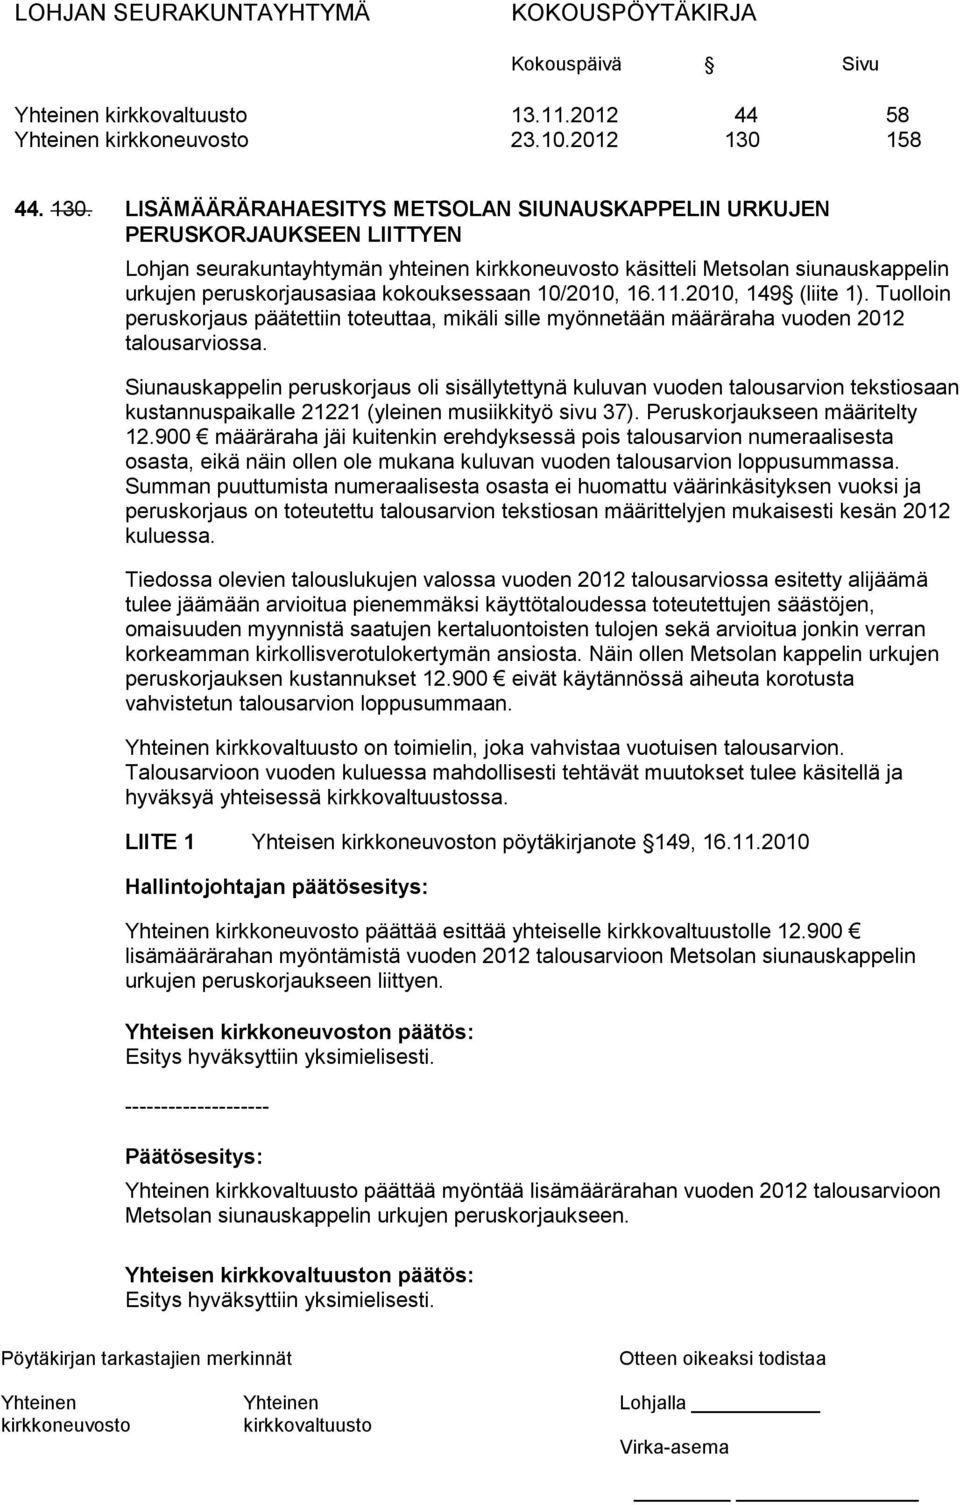 LISÄMÄÄRÄRAHAESITYS METSOLAN SIUNAUSKAPPELIN URKUJEN PERUSKORJAUKSEEN LIITTYEN Lohjan seurakuntayhtymän yhteinen käsitteli Metsolan siunauskappelin urkujen peruskorjausasiaa kokouksessaan 10/2010, 16.